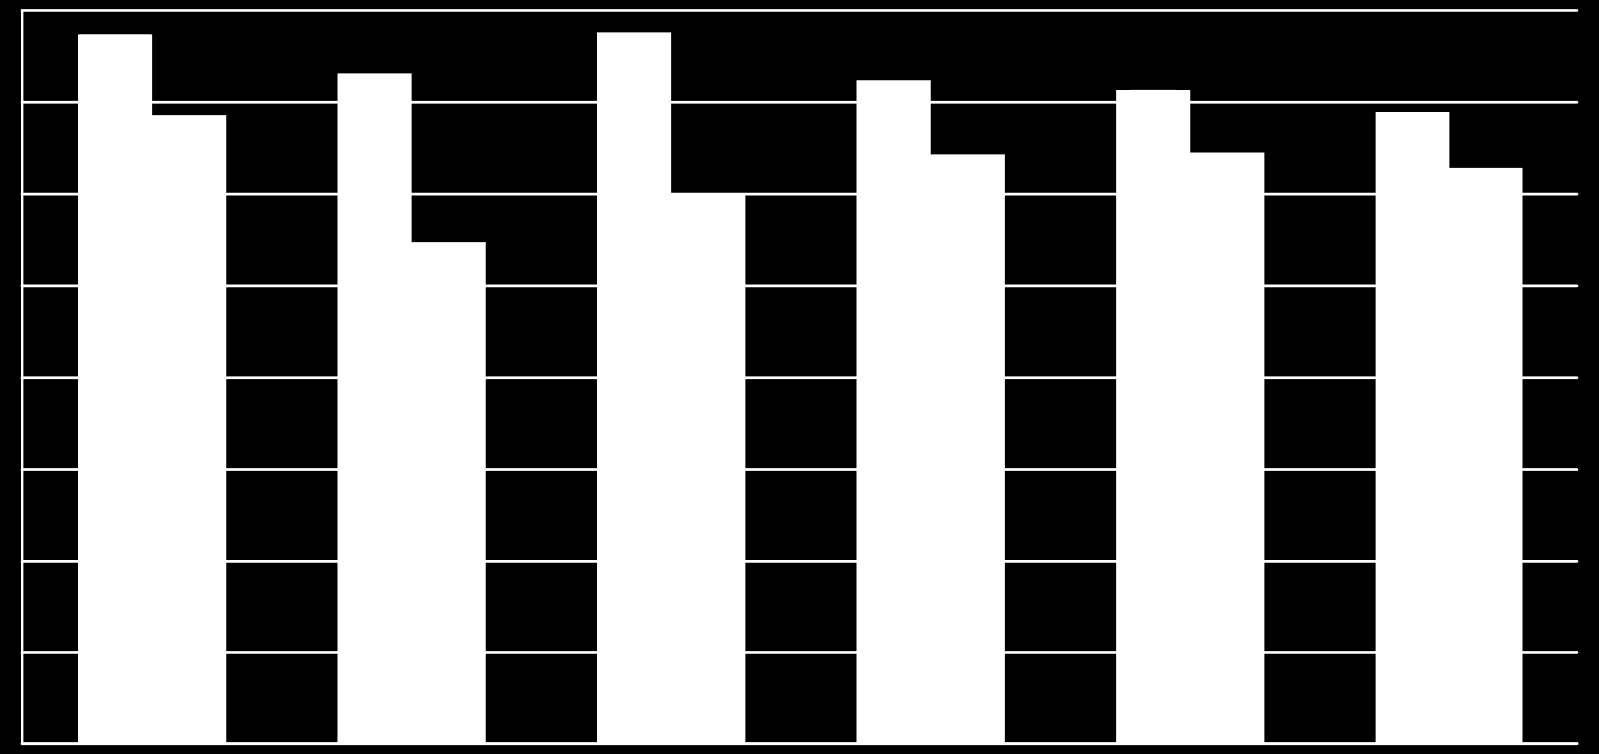 Az élőjuh export alakulása (ezer tonna) 16,0 14,0 12,0 15,5 13,7 14,6 11,0 15,5 12,0 14,5 14,3 13,8